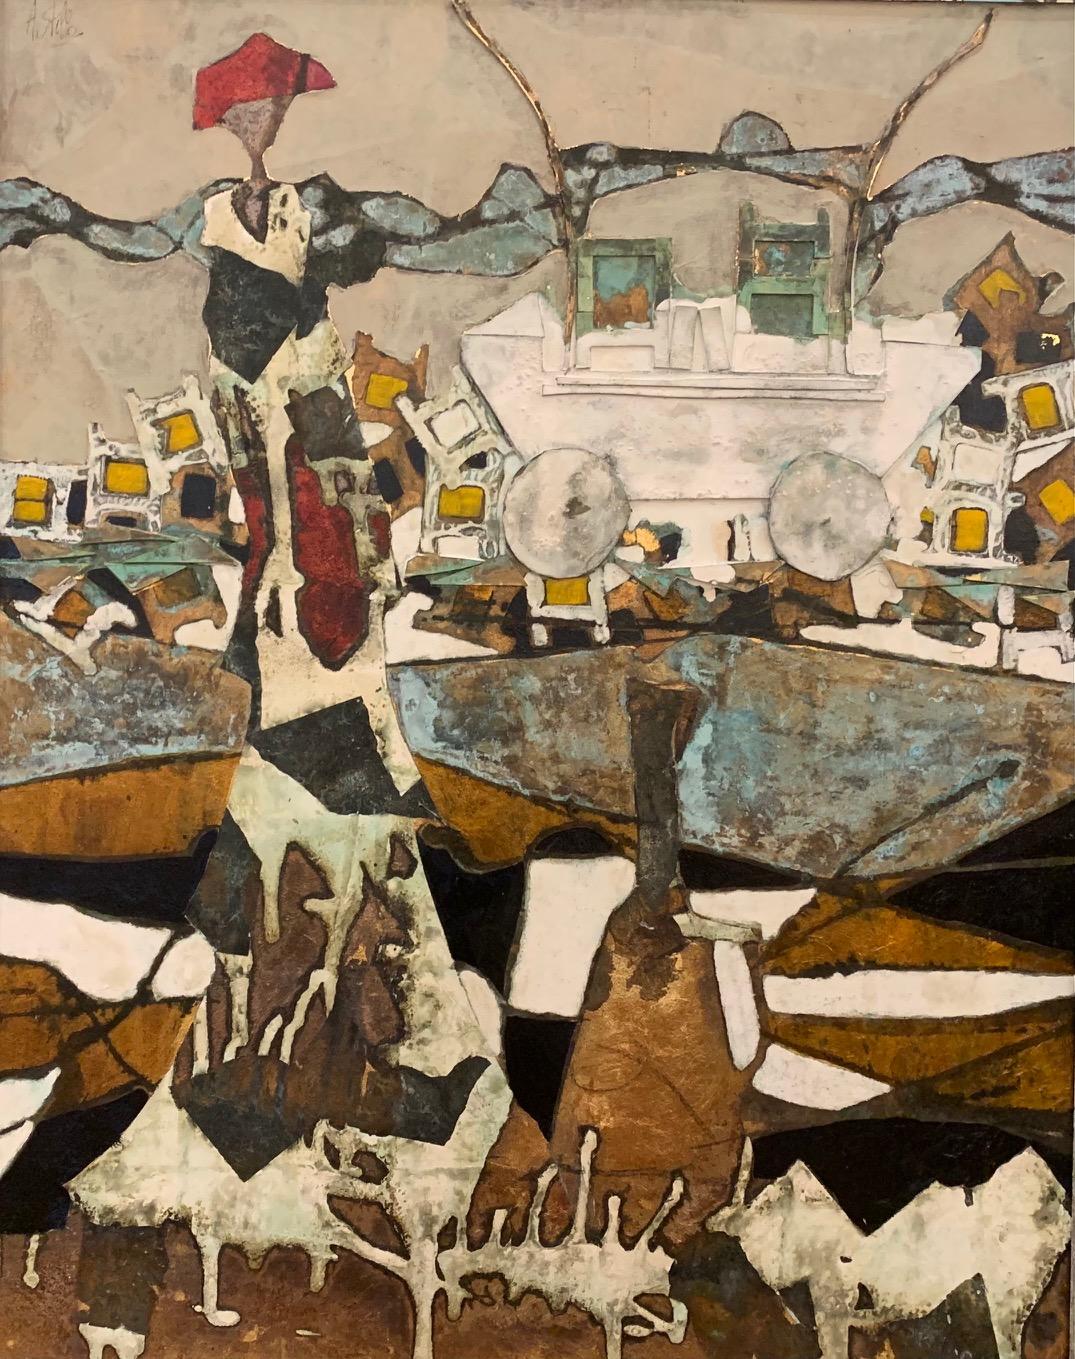 Der Rollwagen der Fantasie –Andrea Stella-Figuratives abstraktes Gemälde – Mixed Media – Mixed Media Art von ANDREA STELLA